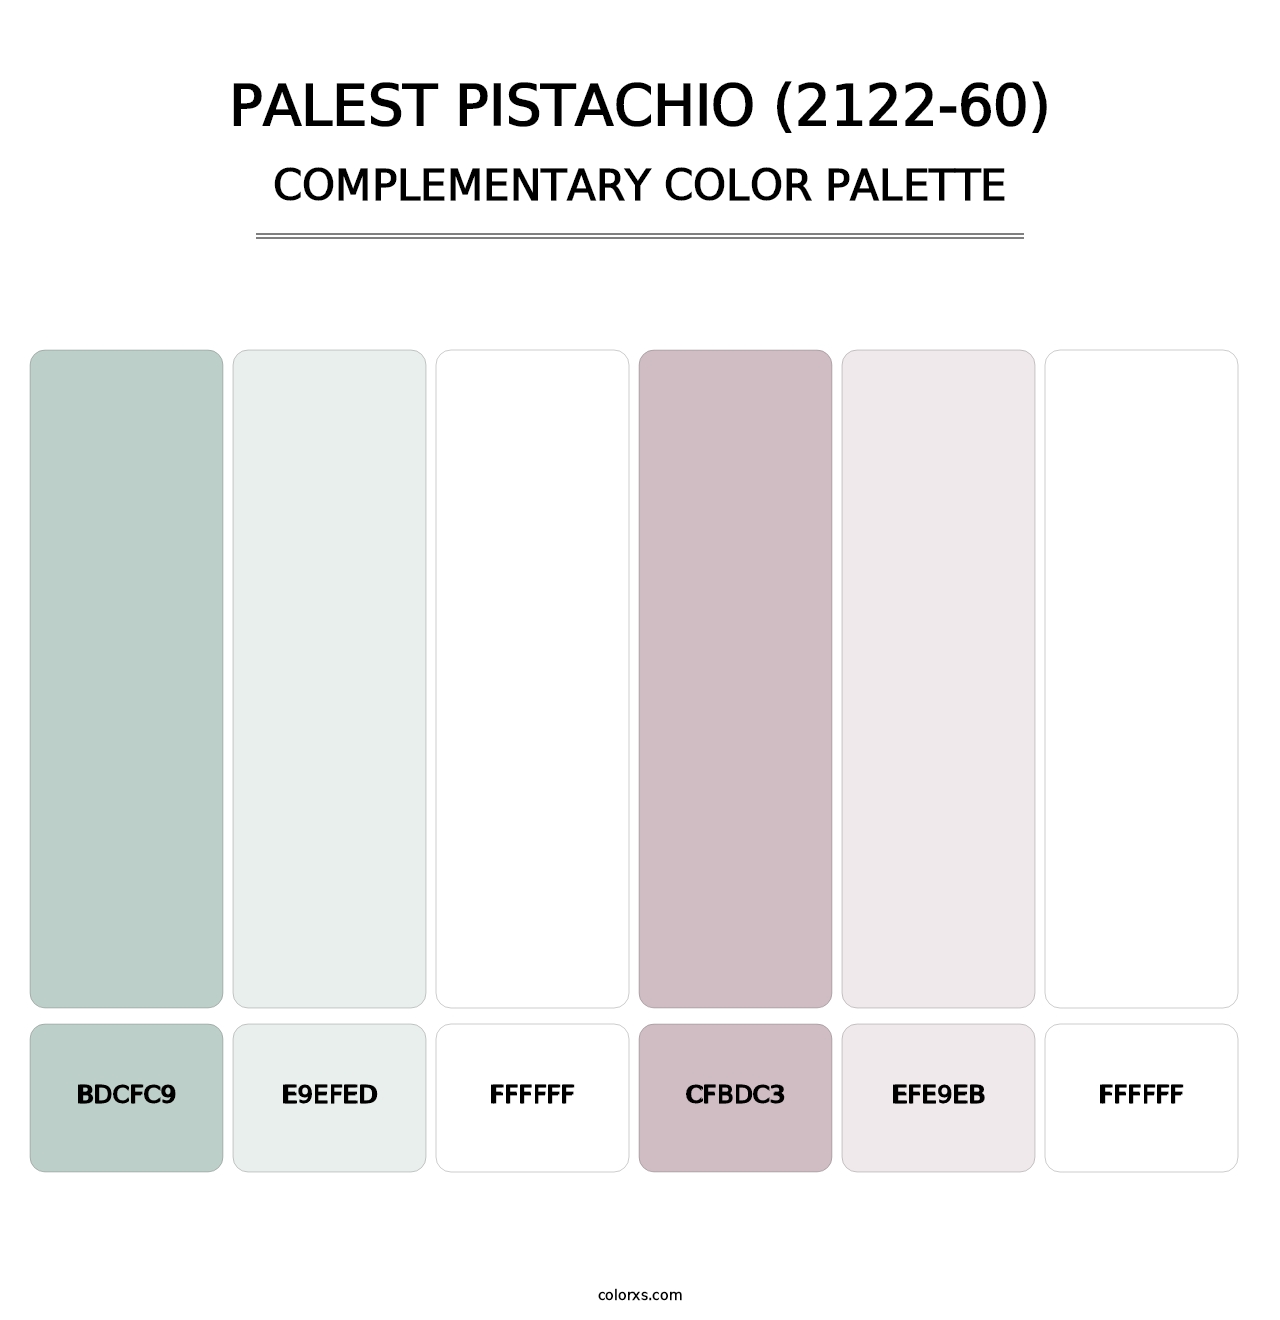 Palest Pistachio (2122-60) - Complementary Color Palette